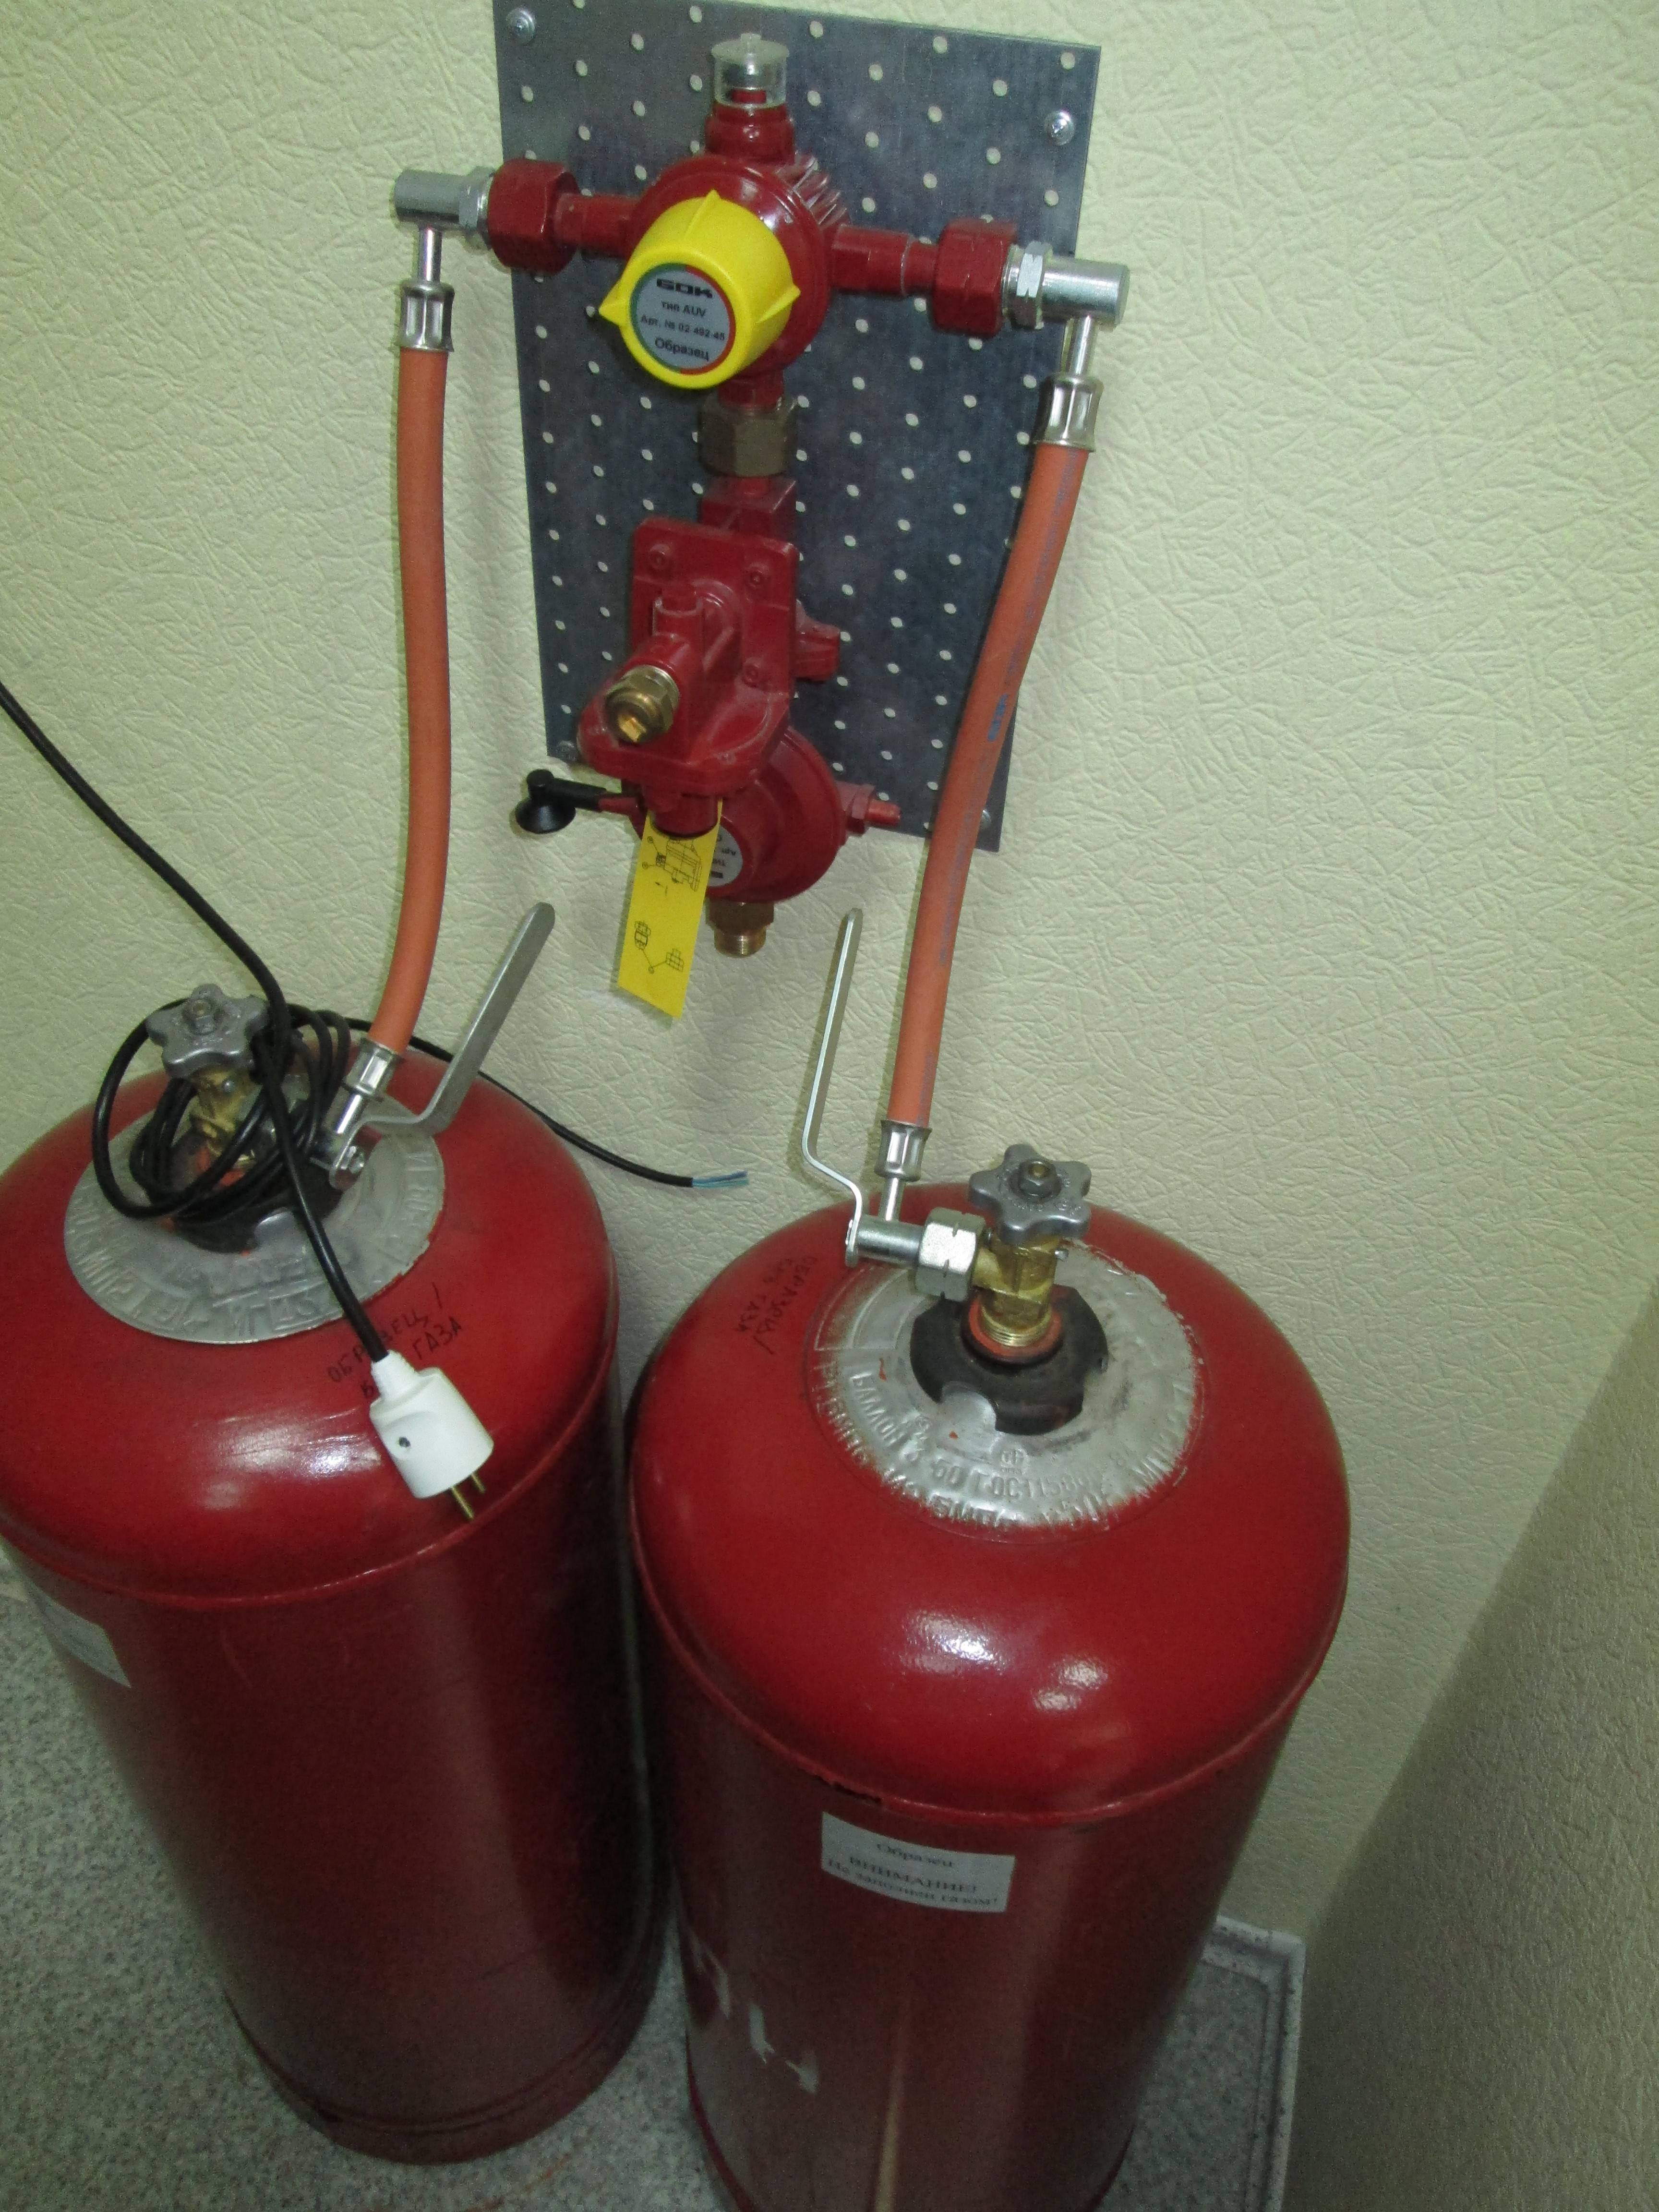 Газовое отопление частного дома: какое оборудование требуется, принцип работы и схема подключения, расчёт расхода топлива